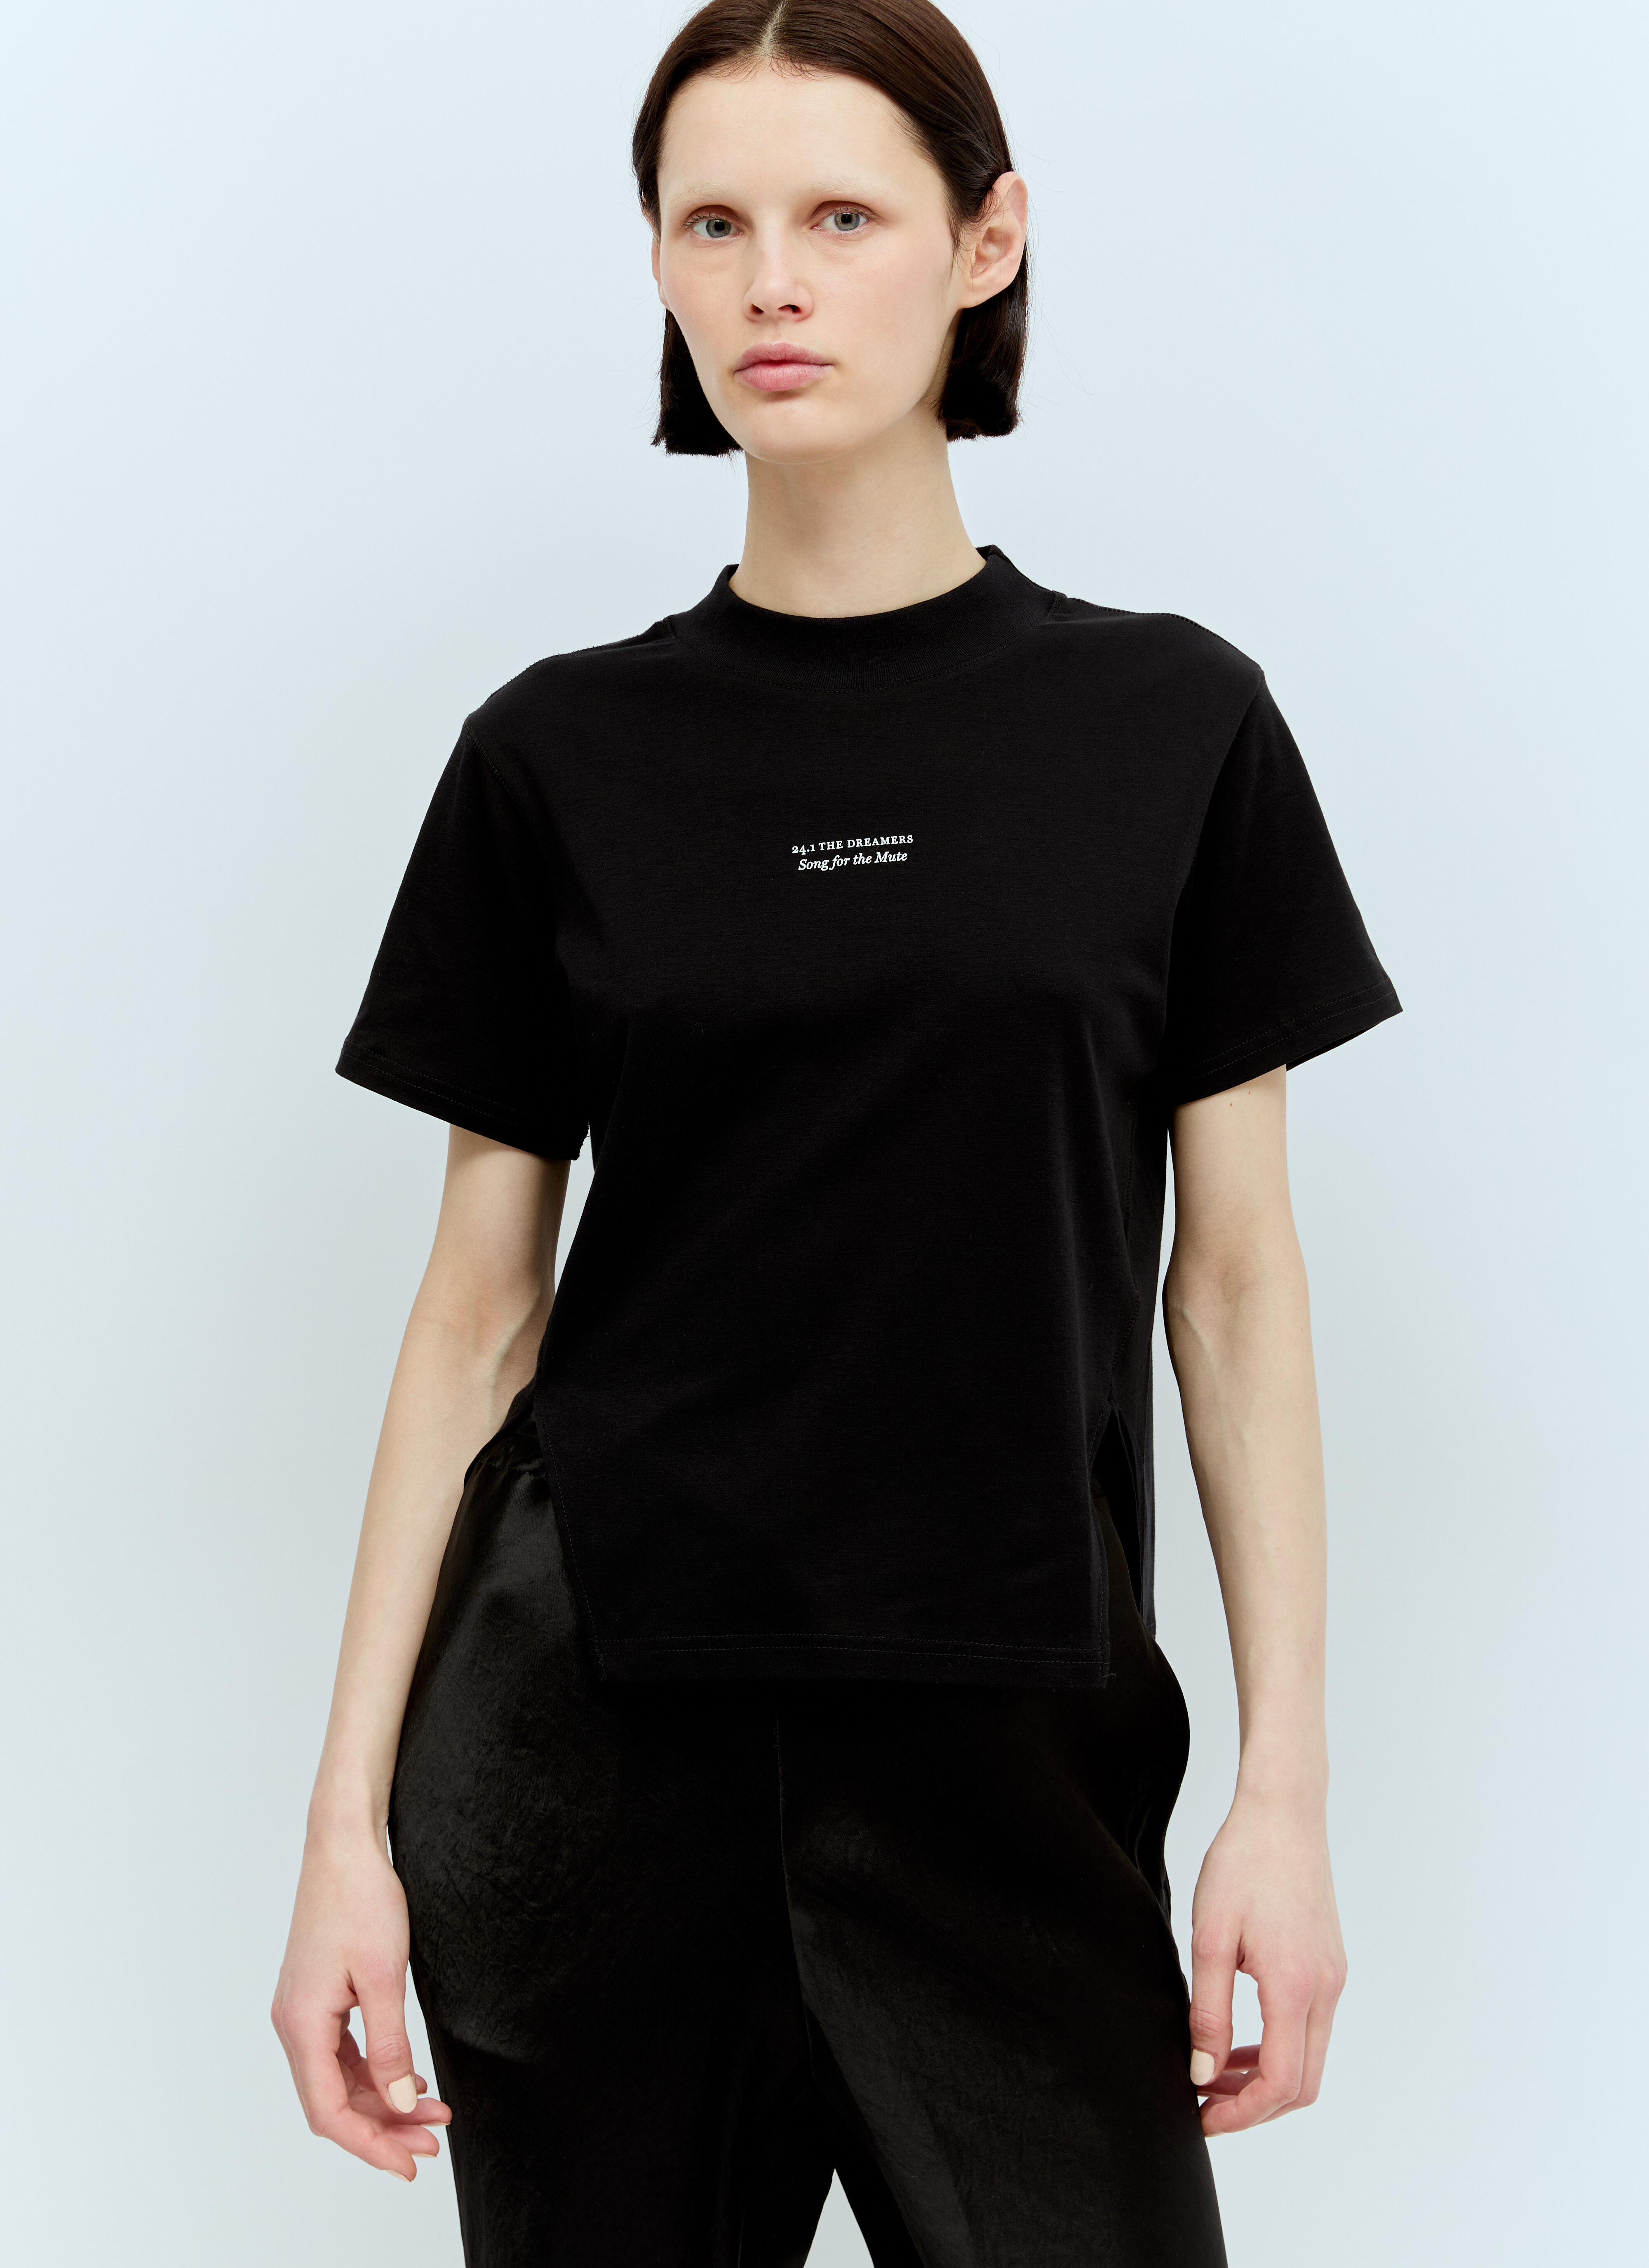 Miu Miu The Dreamers T-Shirt Black miu0257002